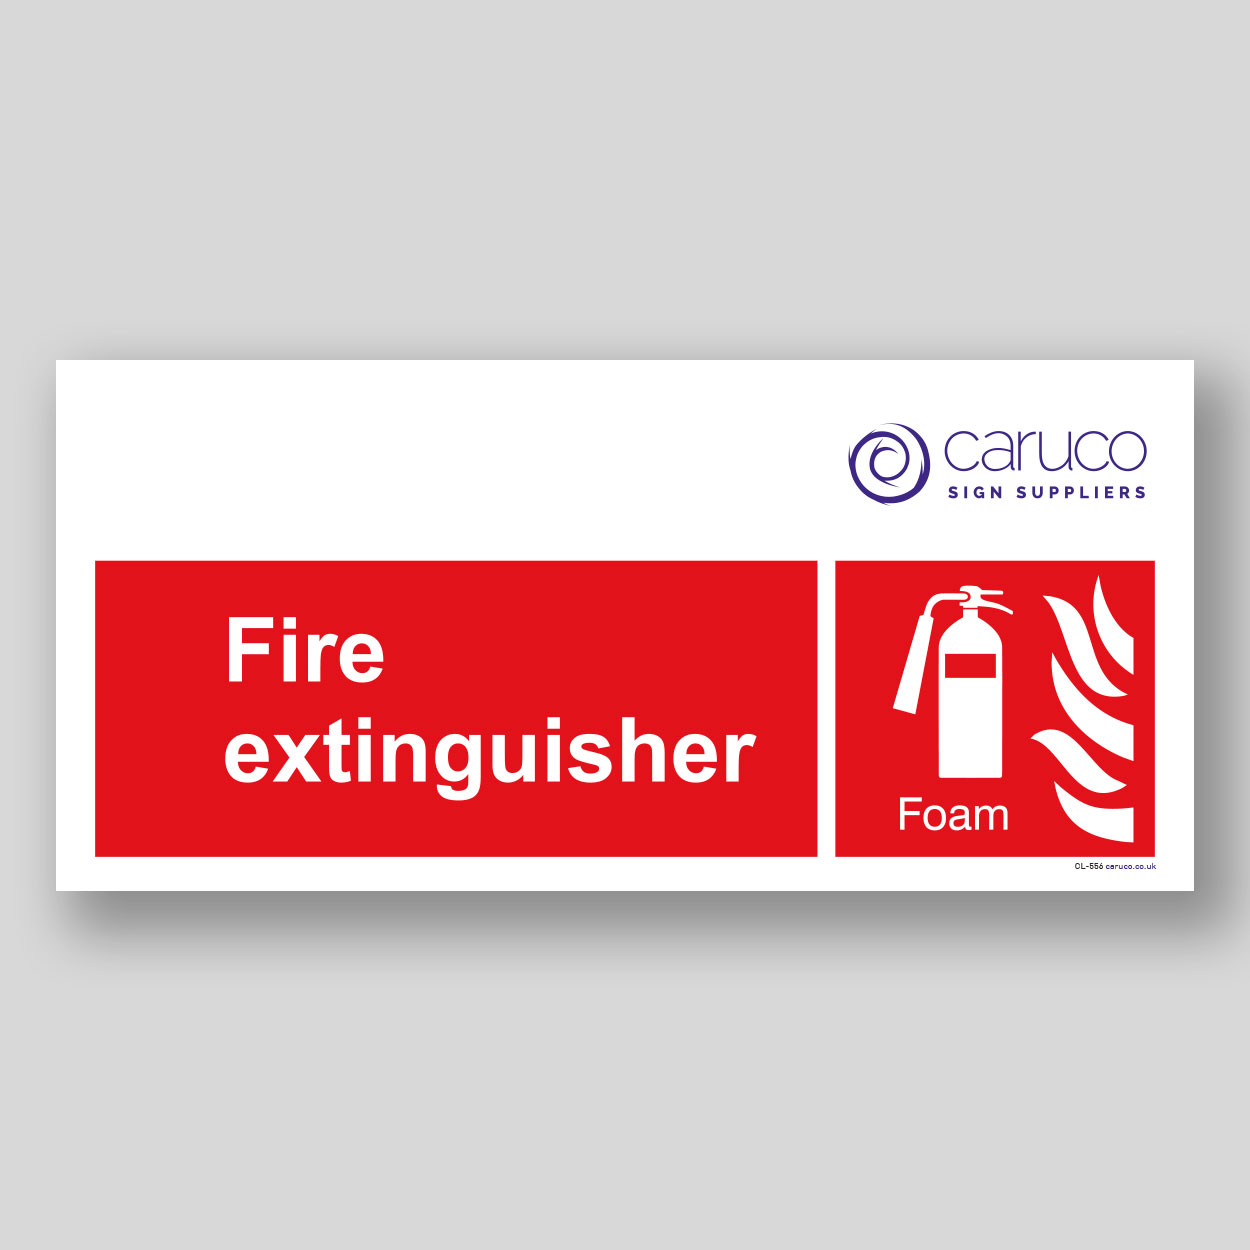 CL-556 Fire extinguisher - foam